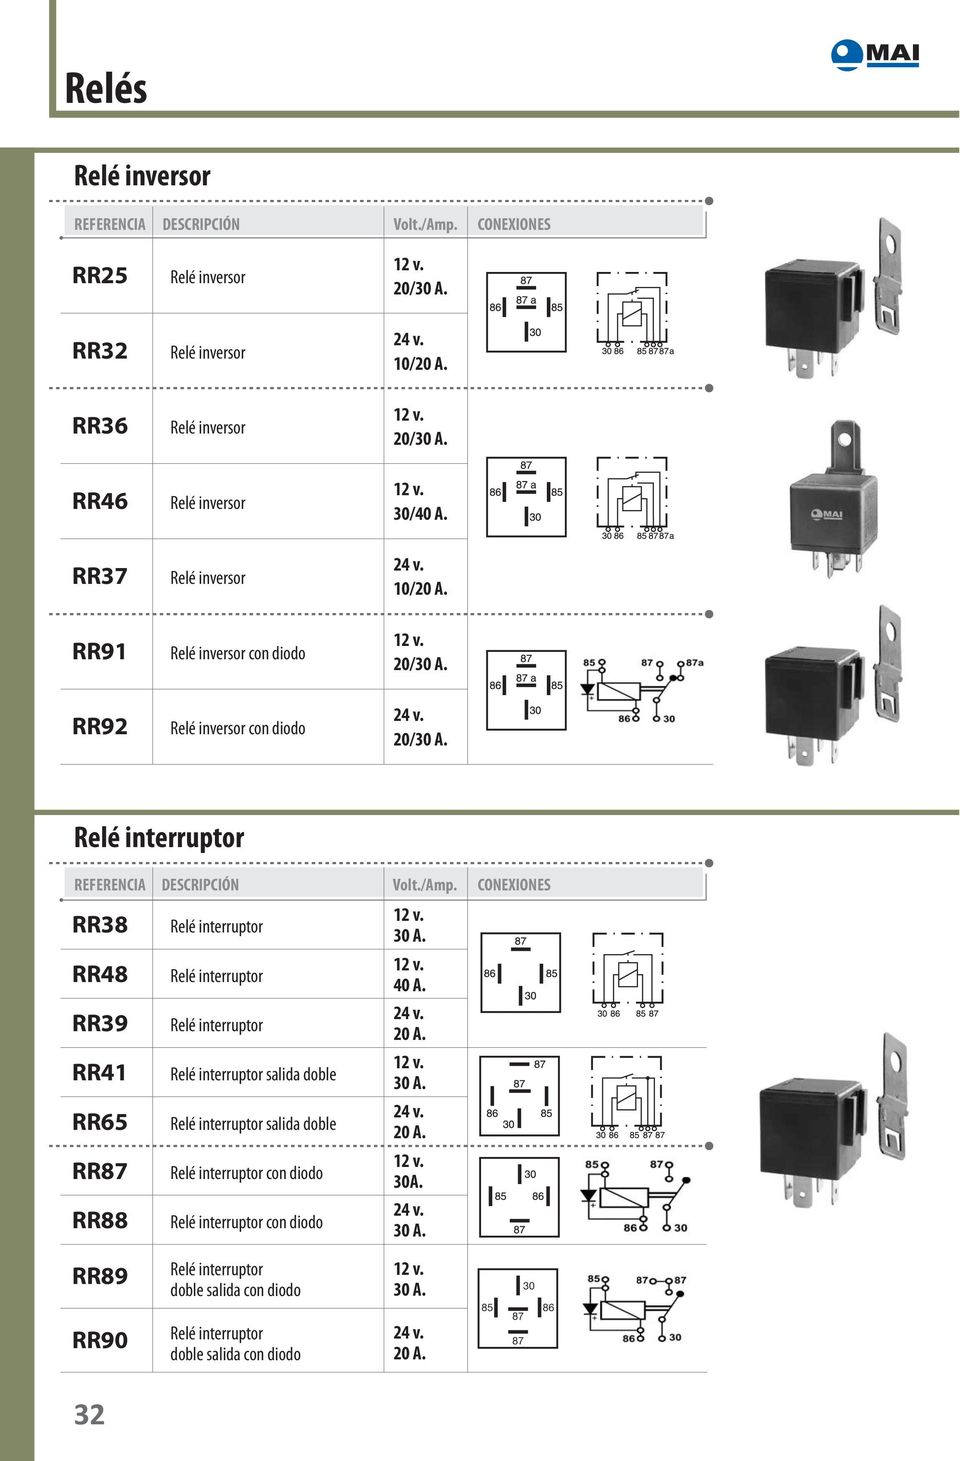 diodo Relé inversor con diodo 20/30 A. 10/20 A. 20/30 A. 30/40 A. 10/20 A. 20/30 A. 20/30 A. REFERENCIA DESCRIPCIÓN Volt./Amp.